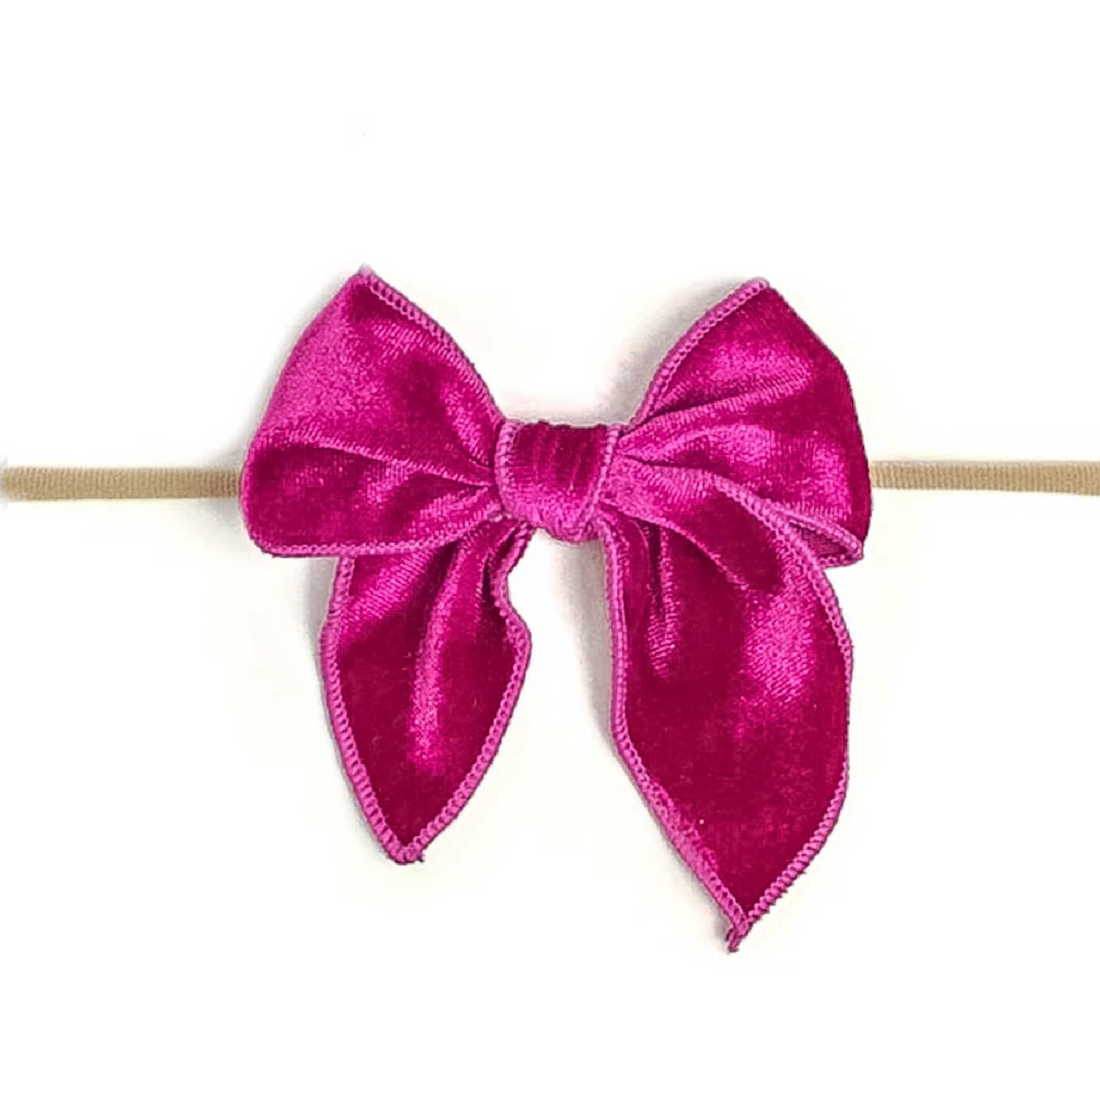 Fable Velvet Bow Headband - Raspberry Rose